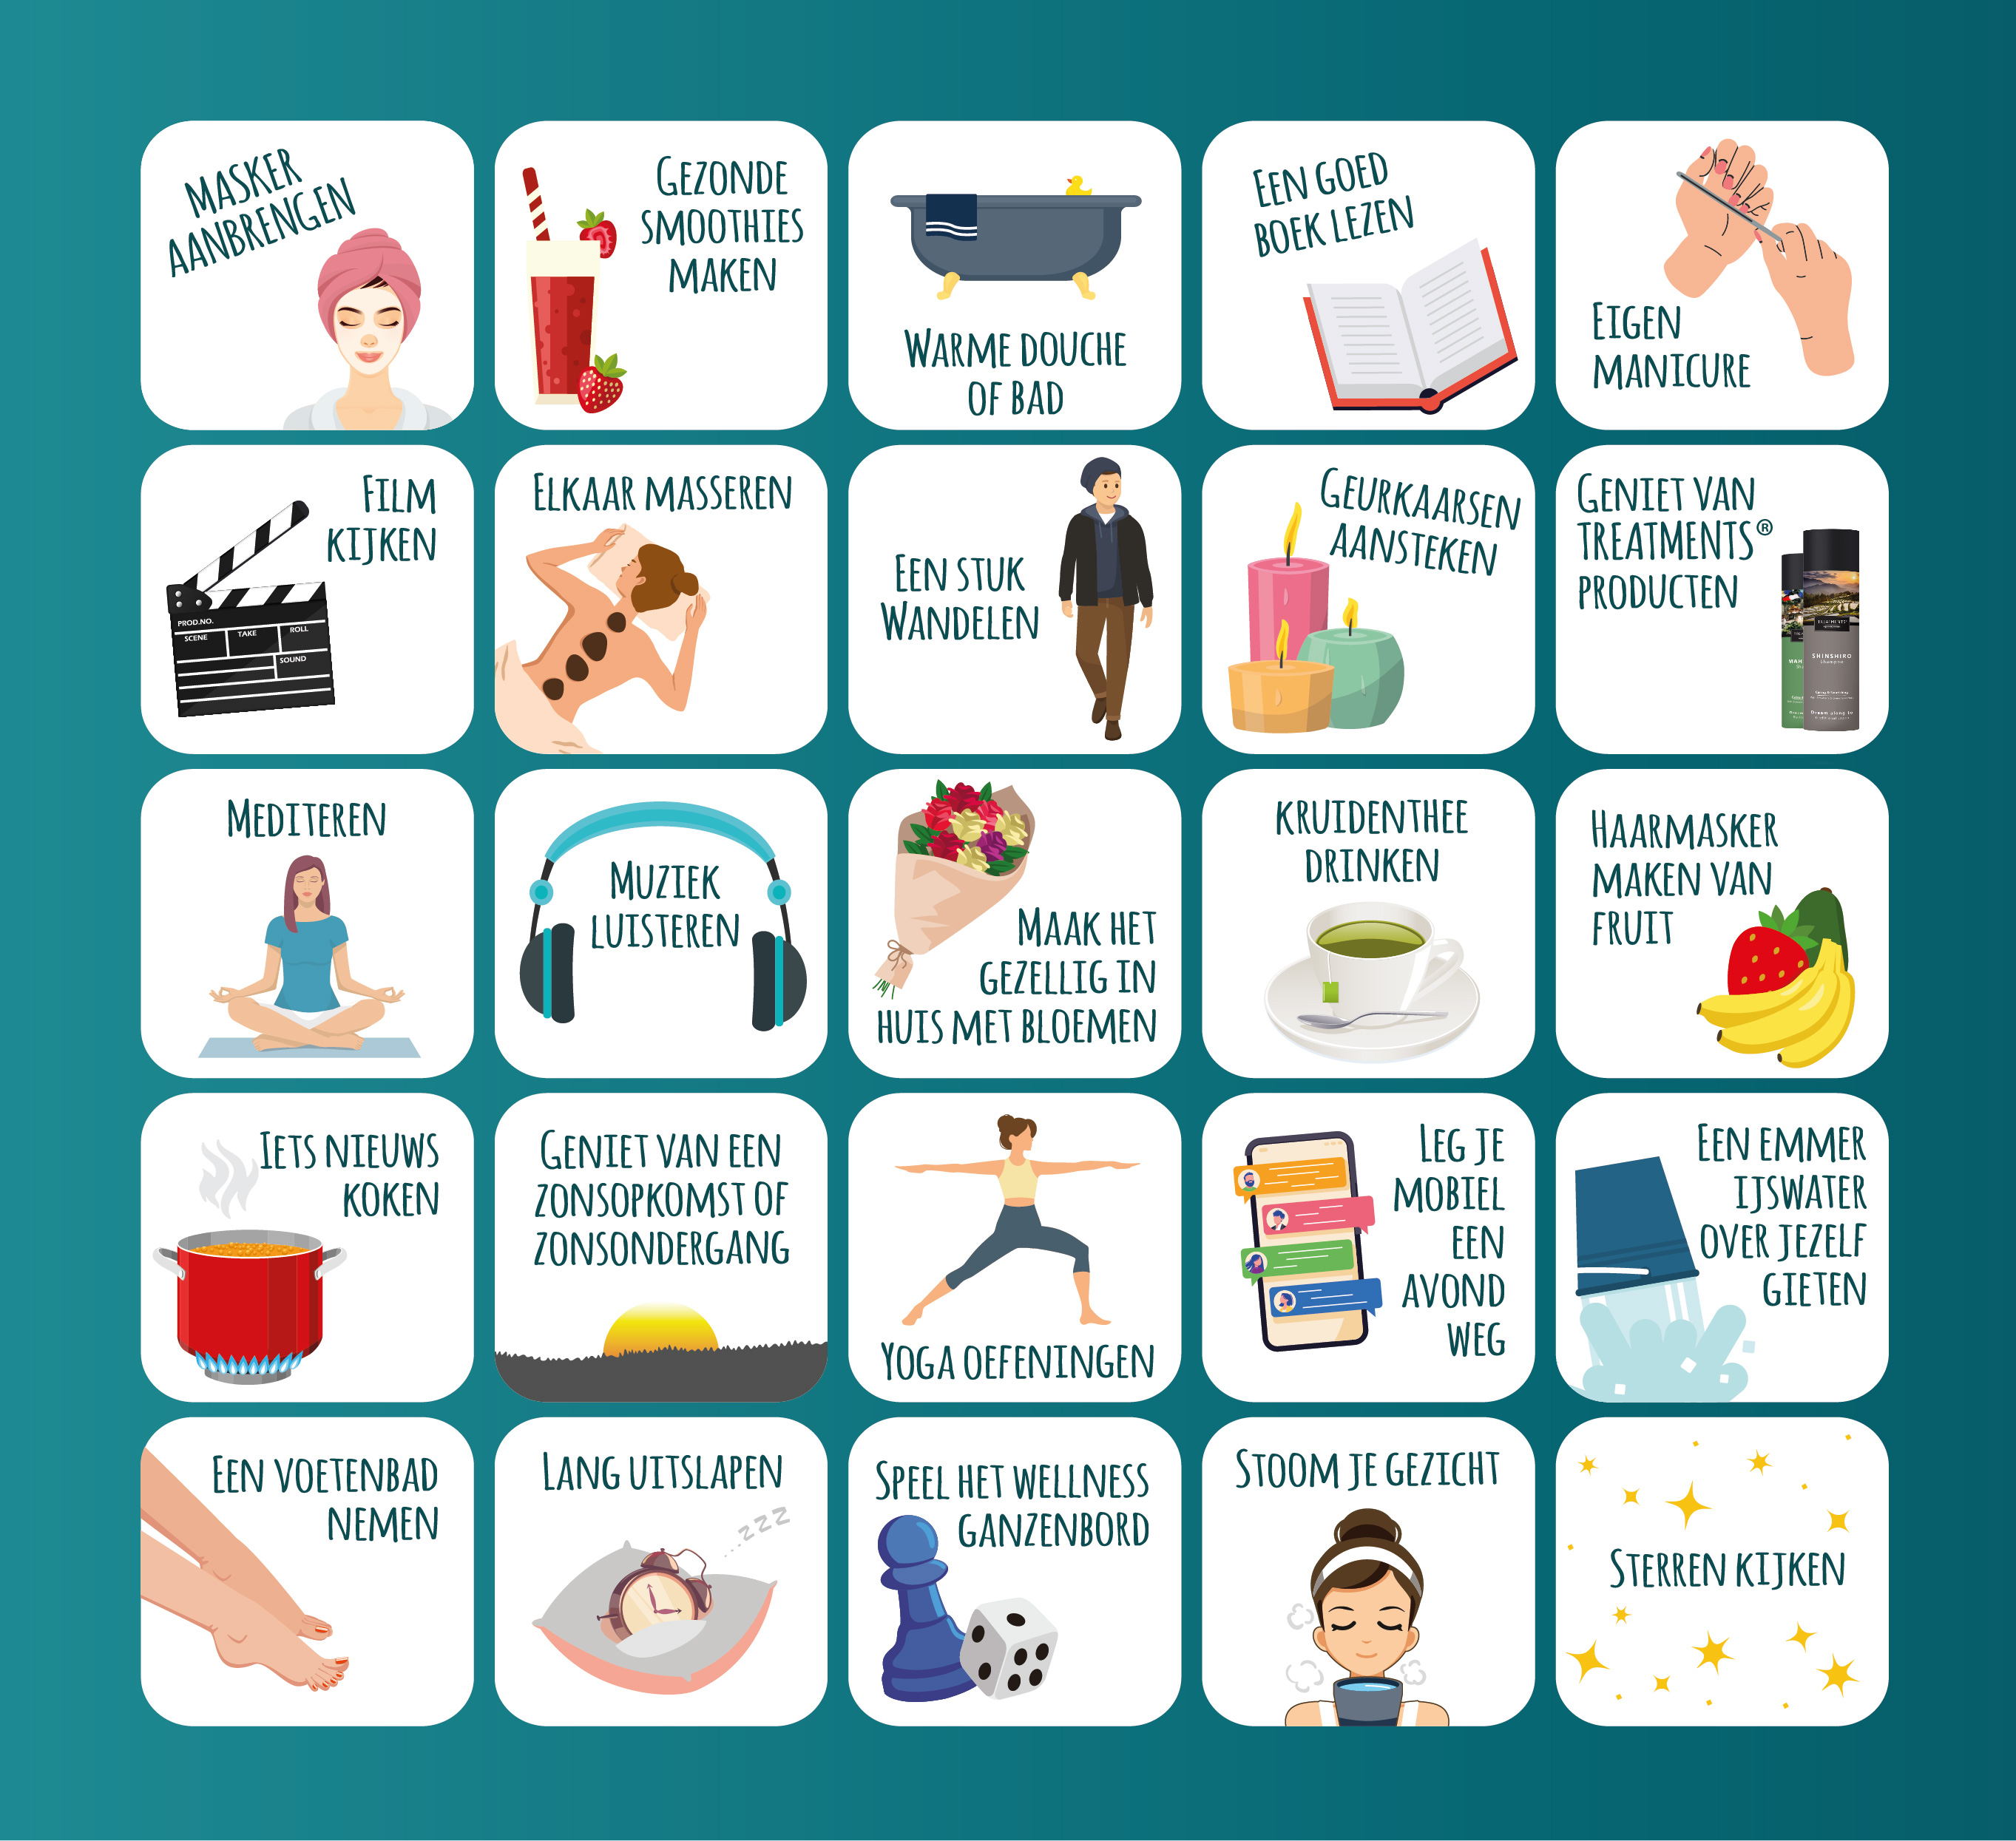 Contentpagina Wellness Bingo | De bingokaart!